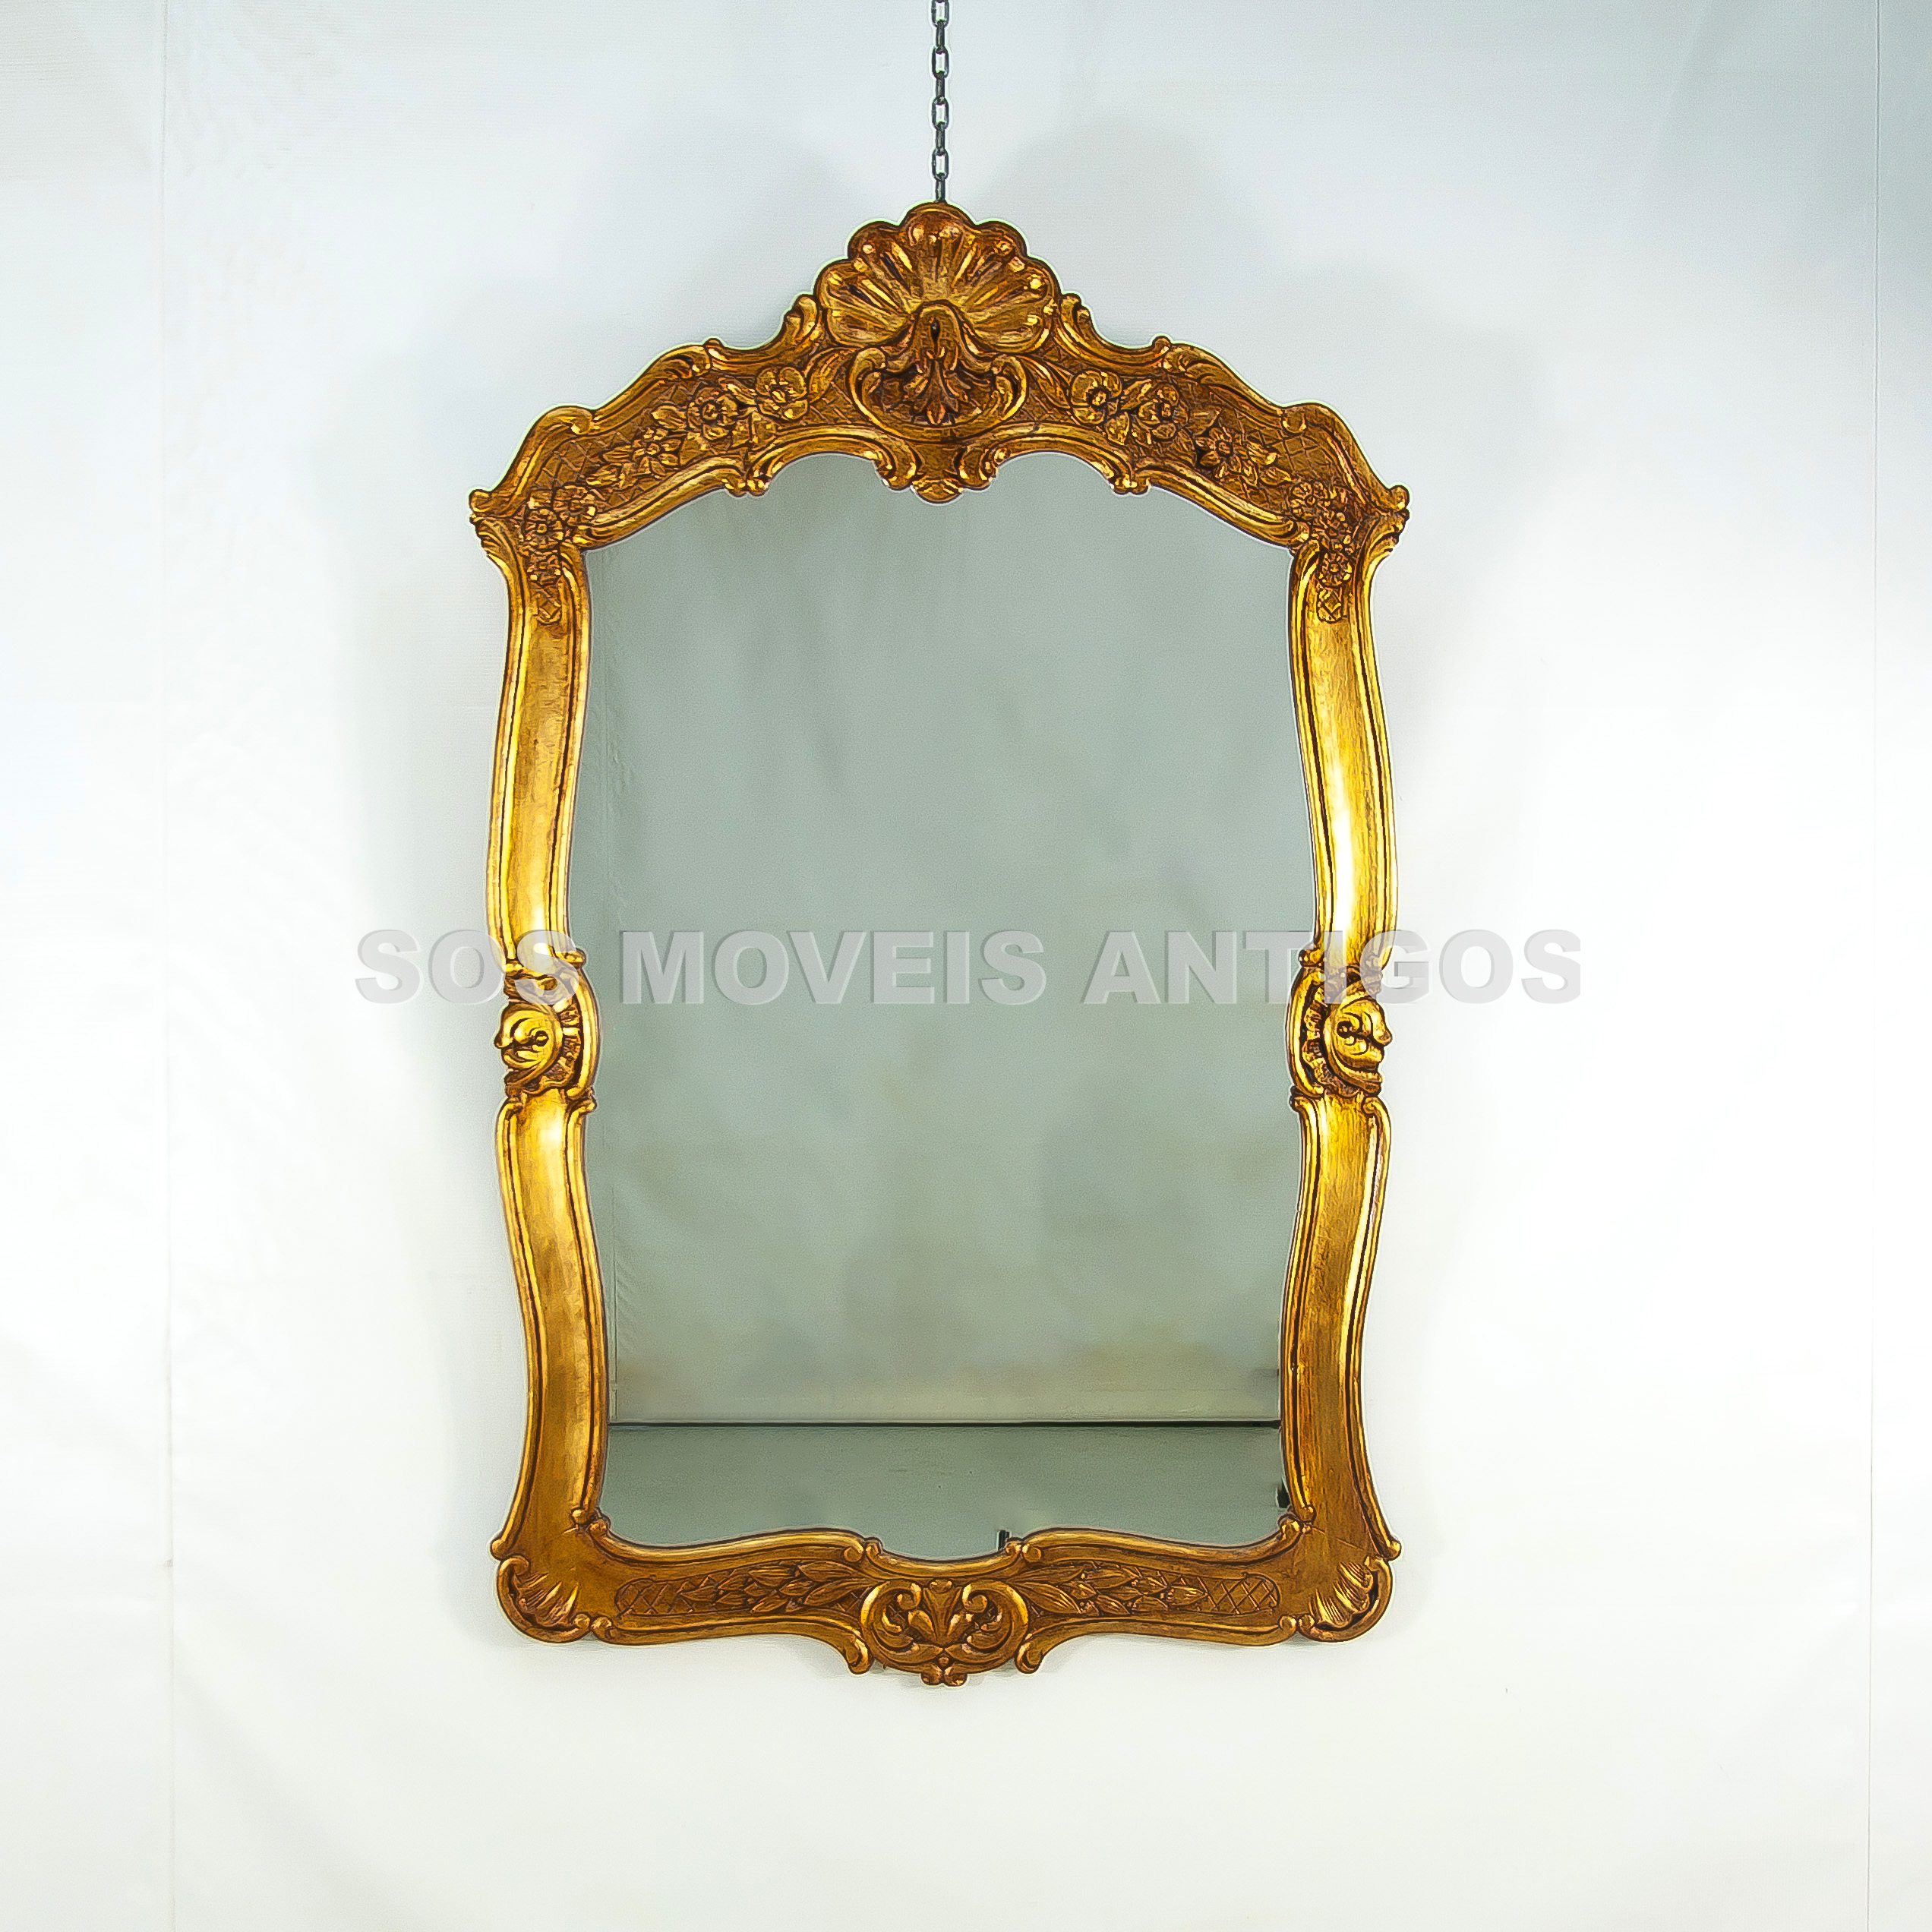 Espelho Estilo Luis XV